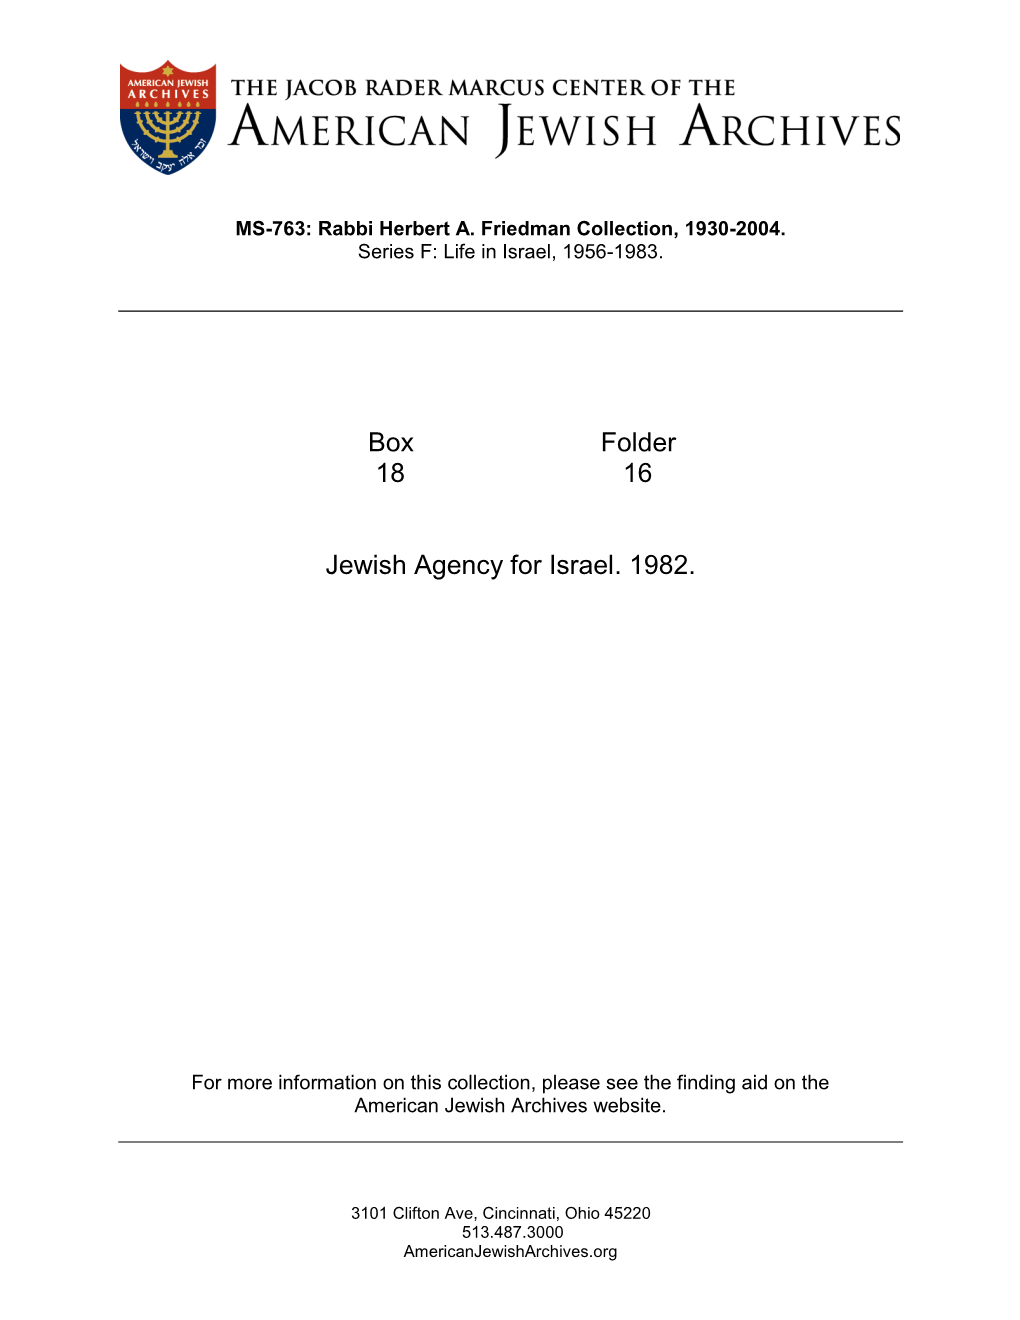 Box Folder 18 16 Jewish Agency for Israel. 1982